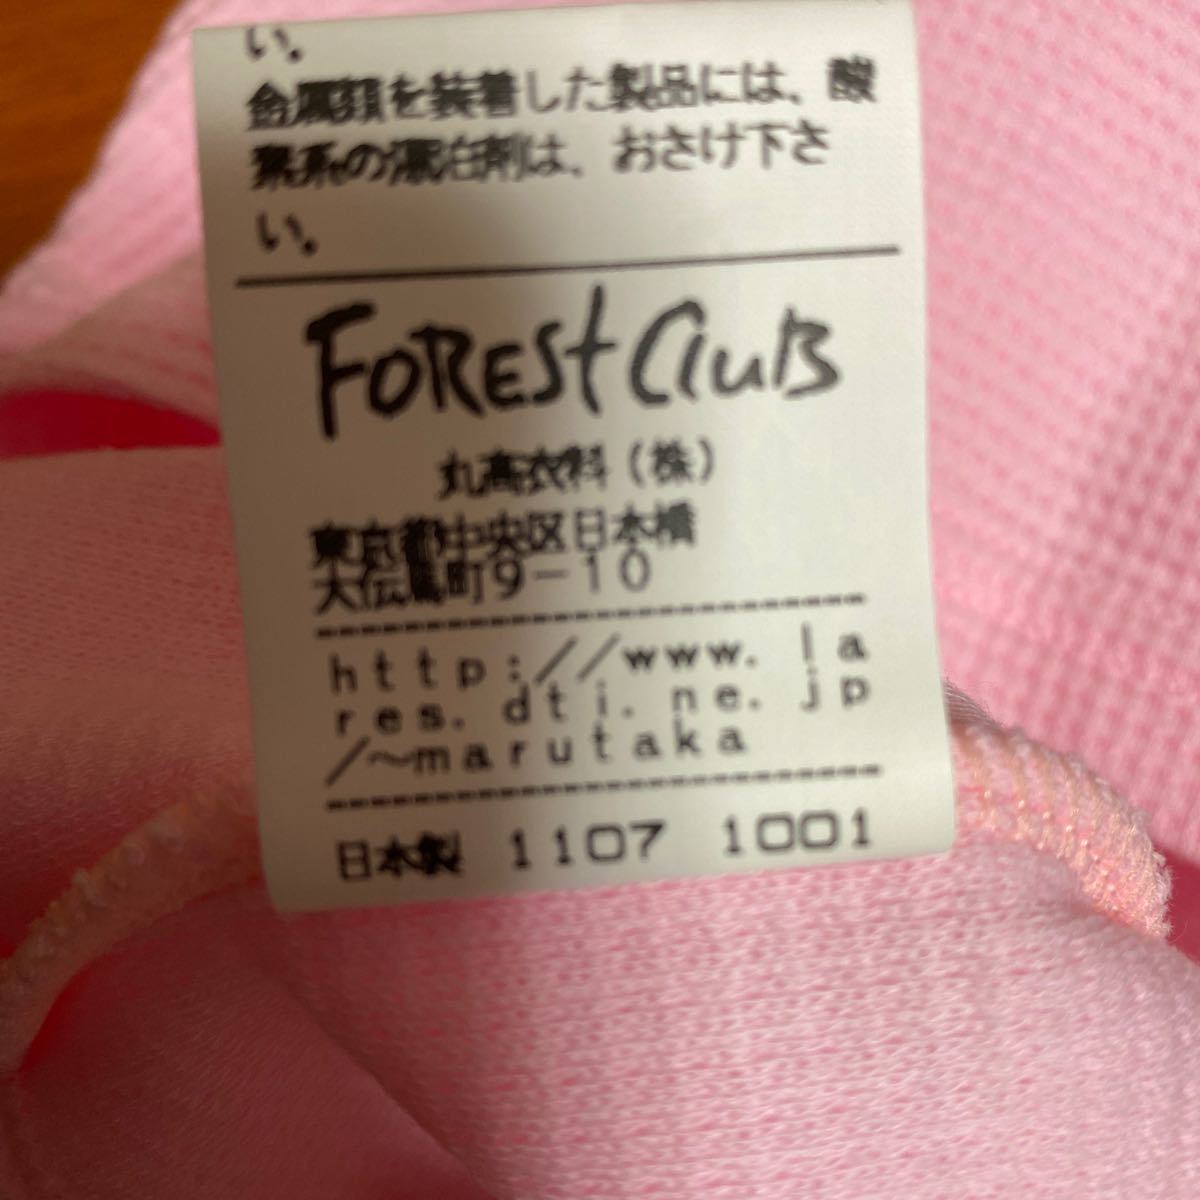  не использовался four отсутствует Club кардиган размер 80 80 есть перевод сделано в Японии 